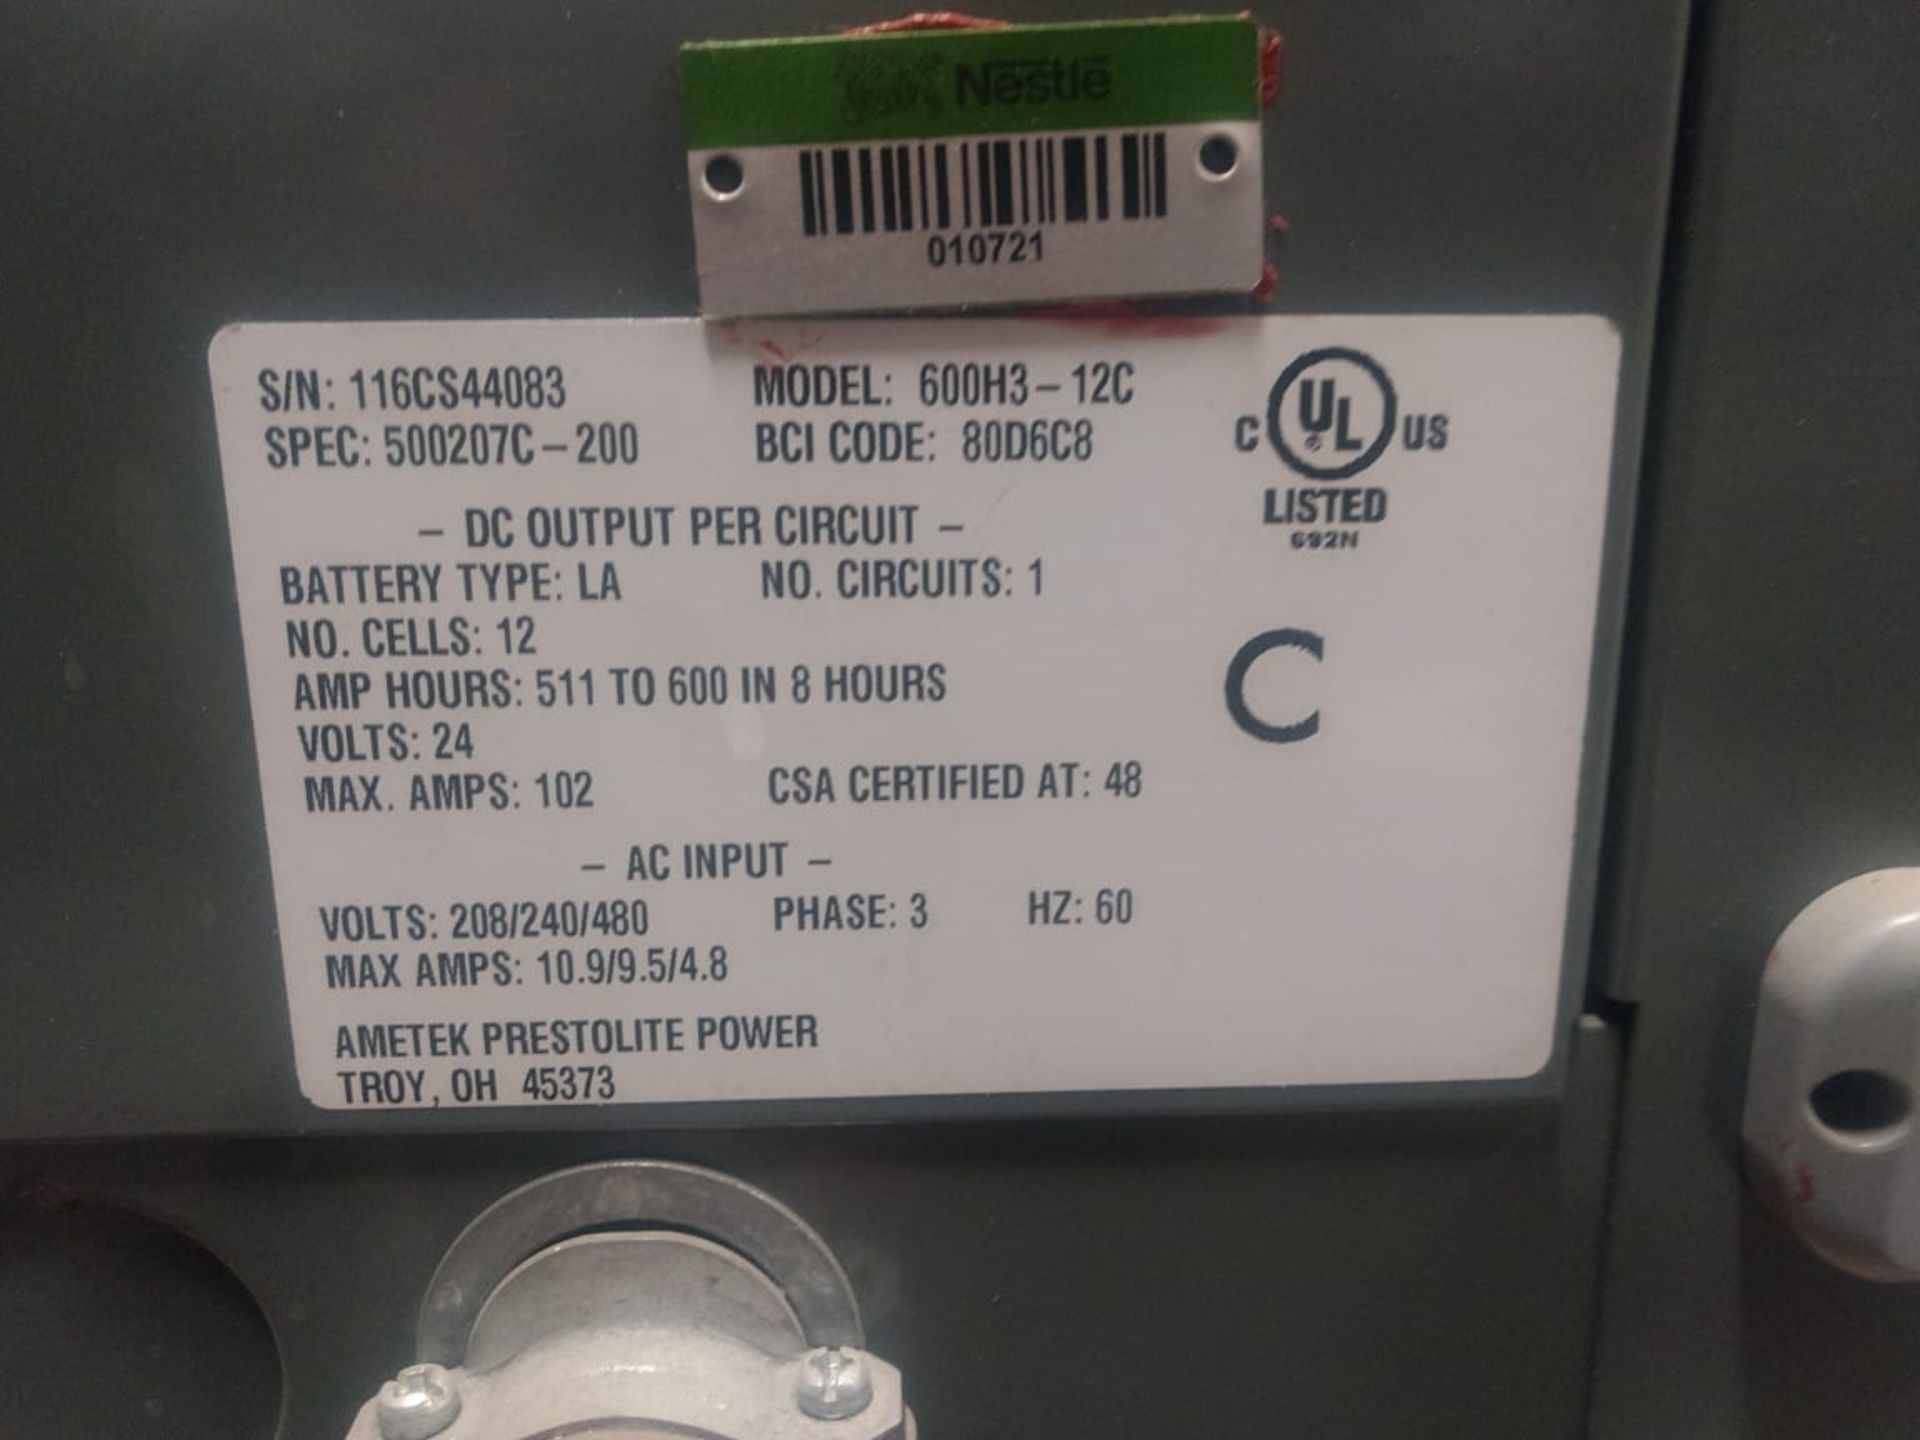 2 Ametek battery chargers, model 6083-12C, input 208/240/480 V, output 24V. - Image 11 of 12